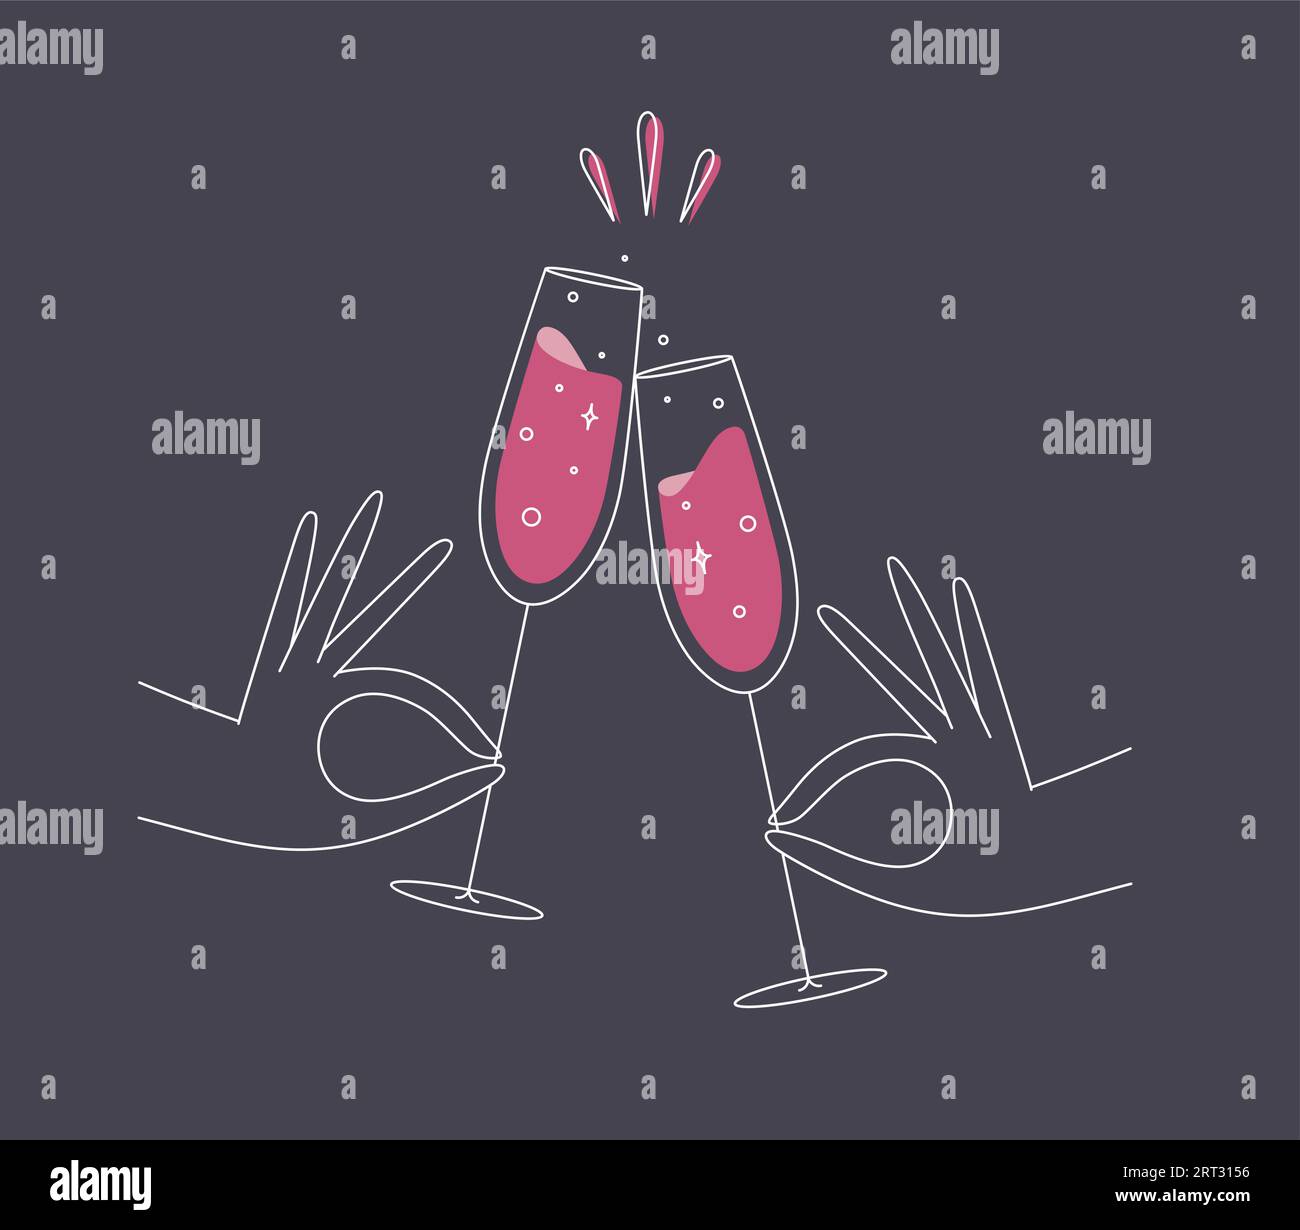 Hand hält Champagner klirrrende Gläser, die in flacher Linie auf dunkelblauem Hintergrund zeichnen Stock Vektor